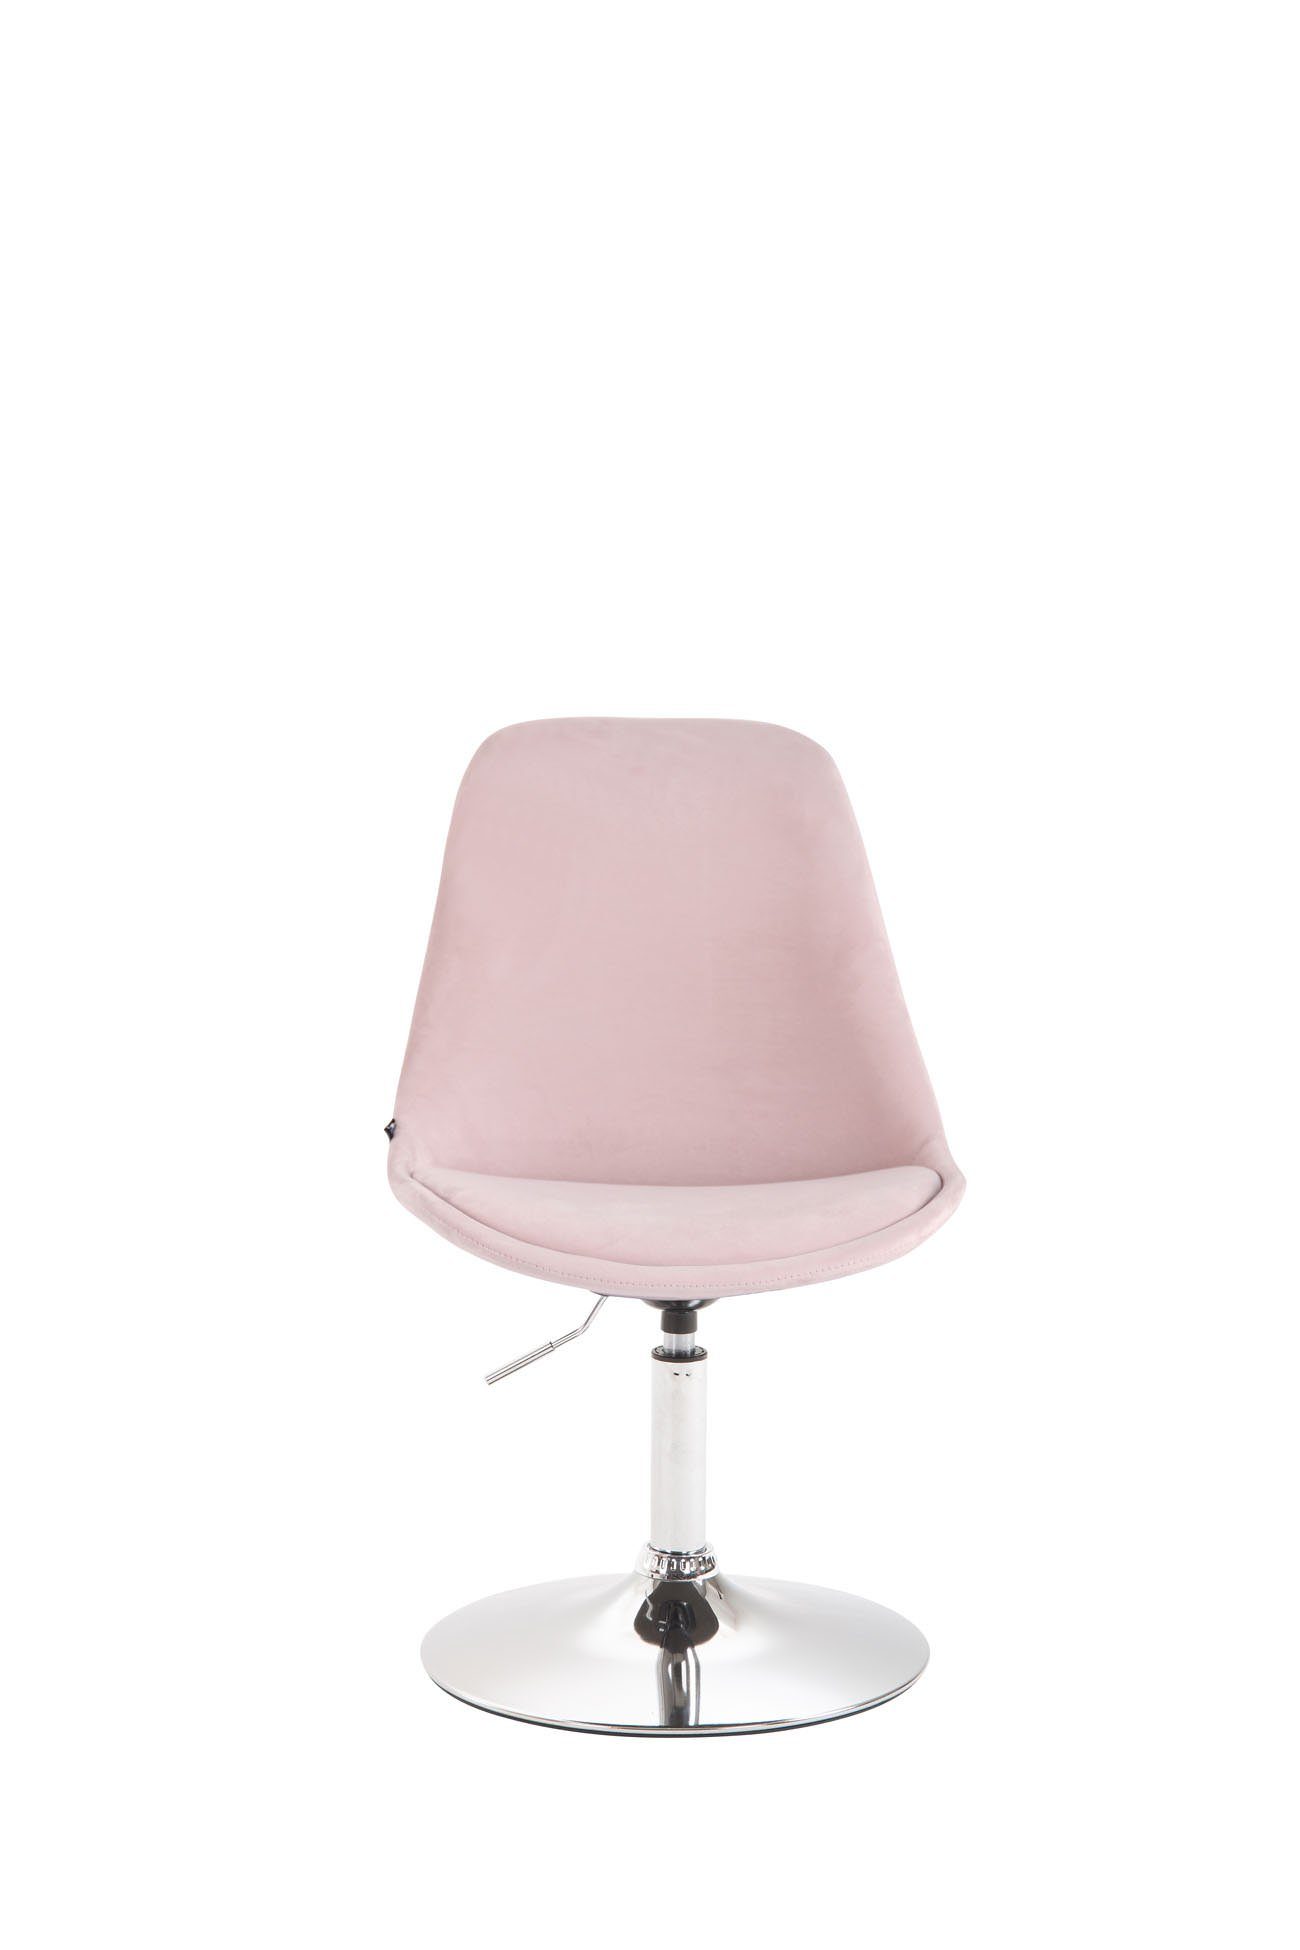 Konferenzstuhl - (Küchenstuhl Esszimmerstuhl Sitzfläche Polsterstuhl), mit - - gepolsterter Sitzfläche: pink TPFLiving Mavic Wohnzimmerstuhl Esstischstuhl - chrom Metall Gestell: hochwertig - Samt